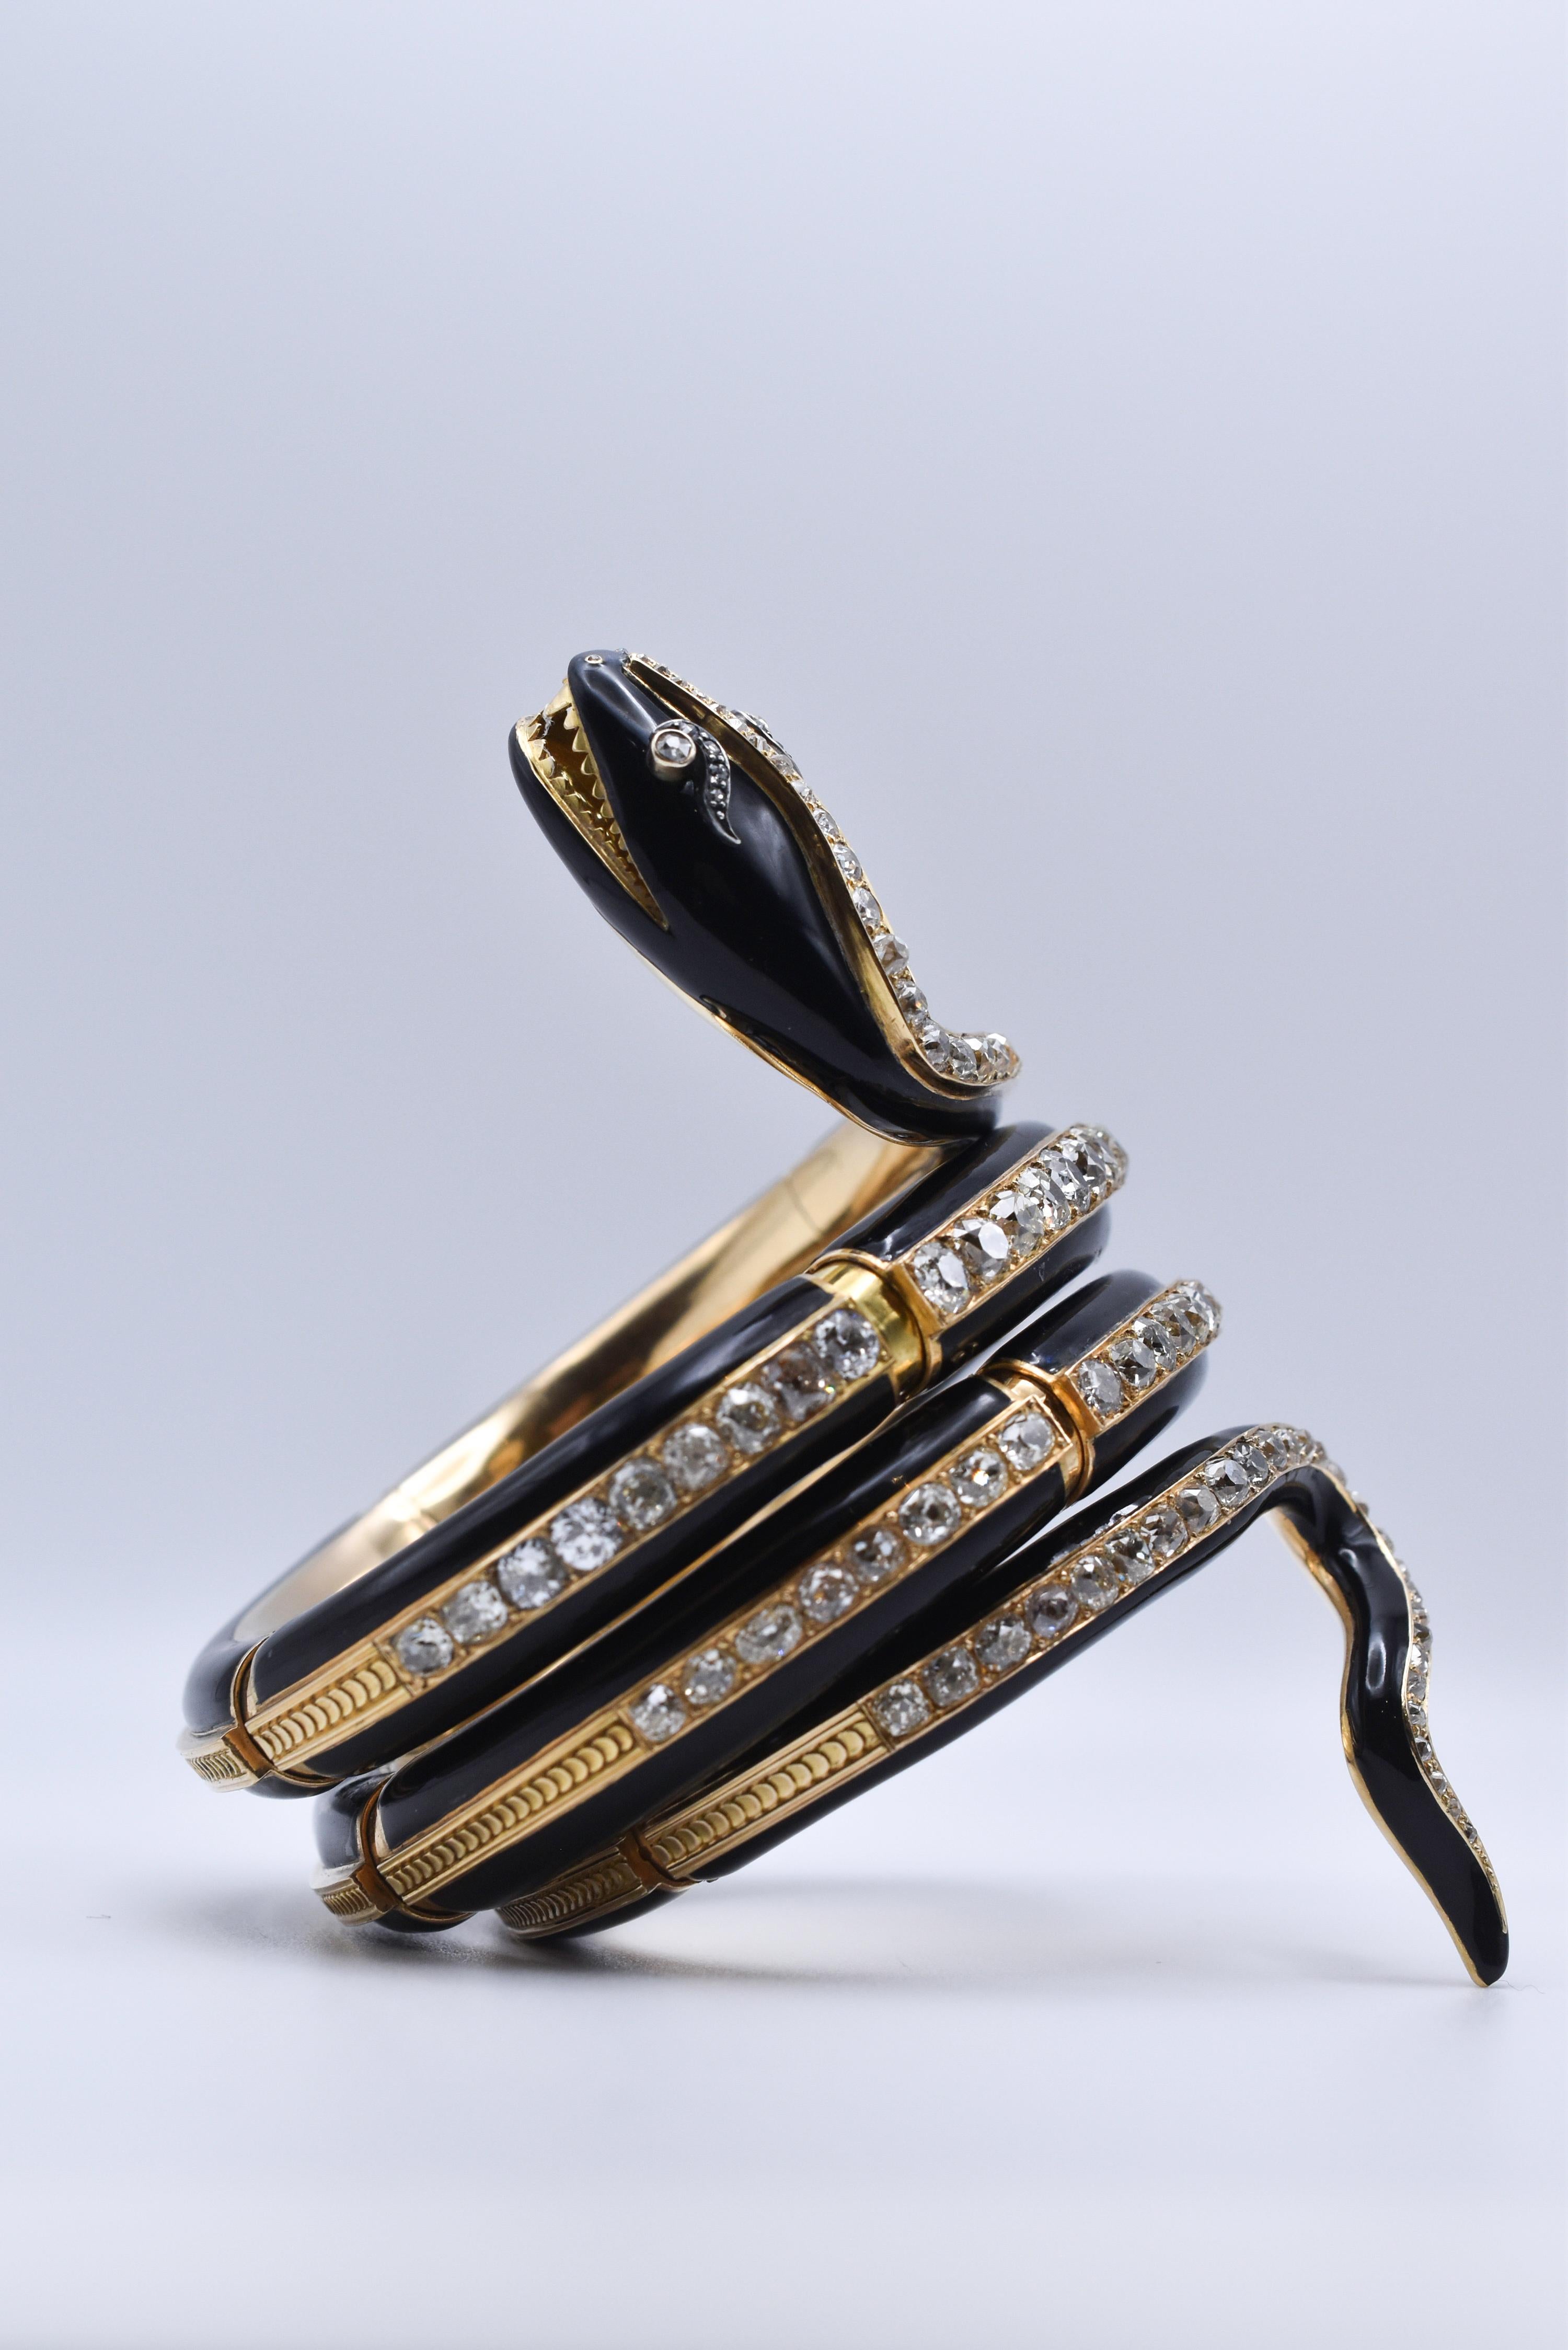 Un beau bracelet serpent ancien datant de l'époque victorienne, réalisé en or jaune 18k avec un motif en émail noir, mettant en valeur 28 carats de diamants taille ancienne. Fabriqué en Italie, vers 1880.
